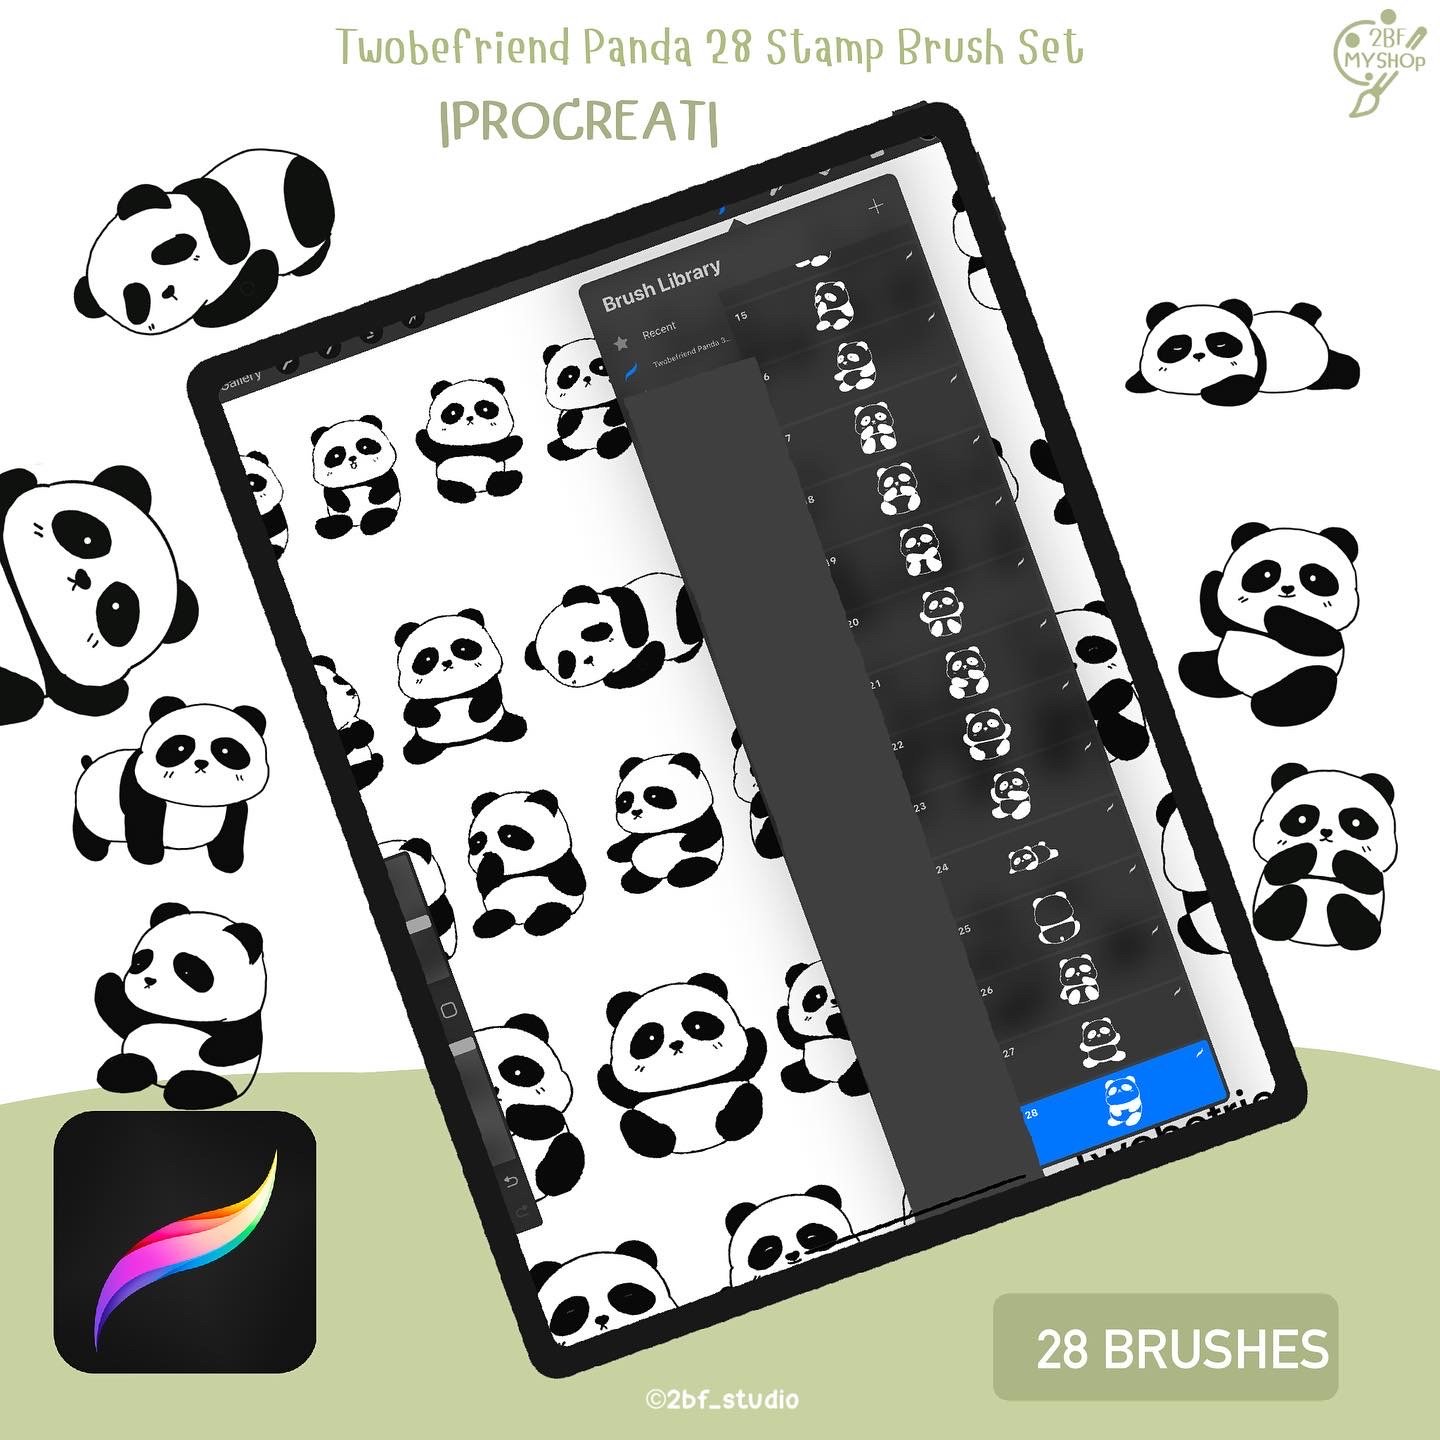 Twobefriend Panda 28 Stamp Brush Set   |PROCREAT BRUSHED|